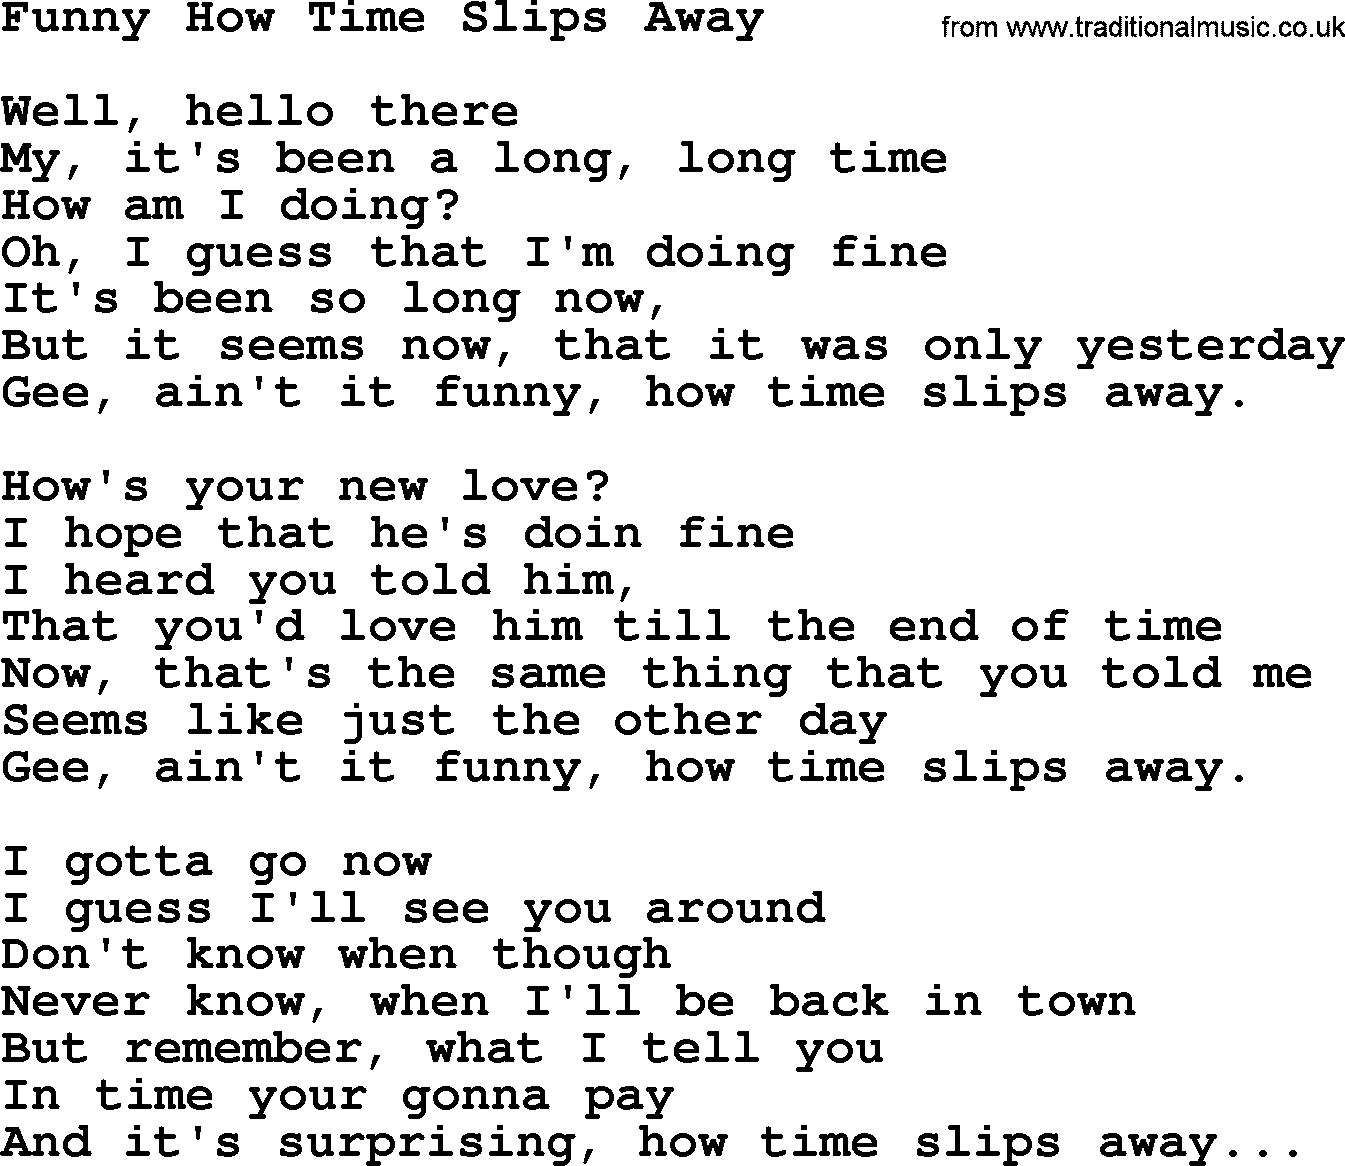 Willie Nelson song: Funny How Time Slips Away lyrics